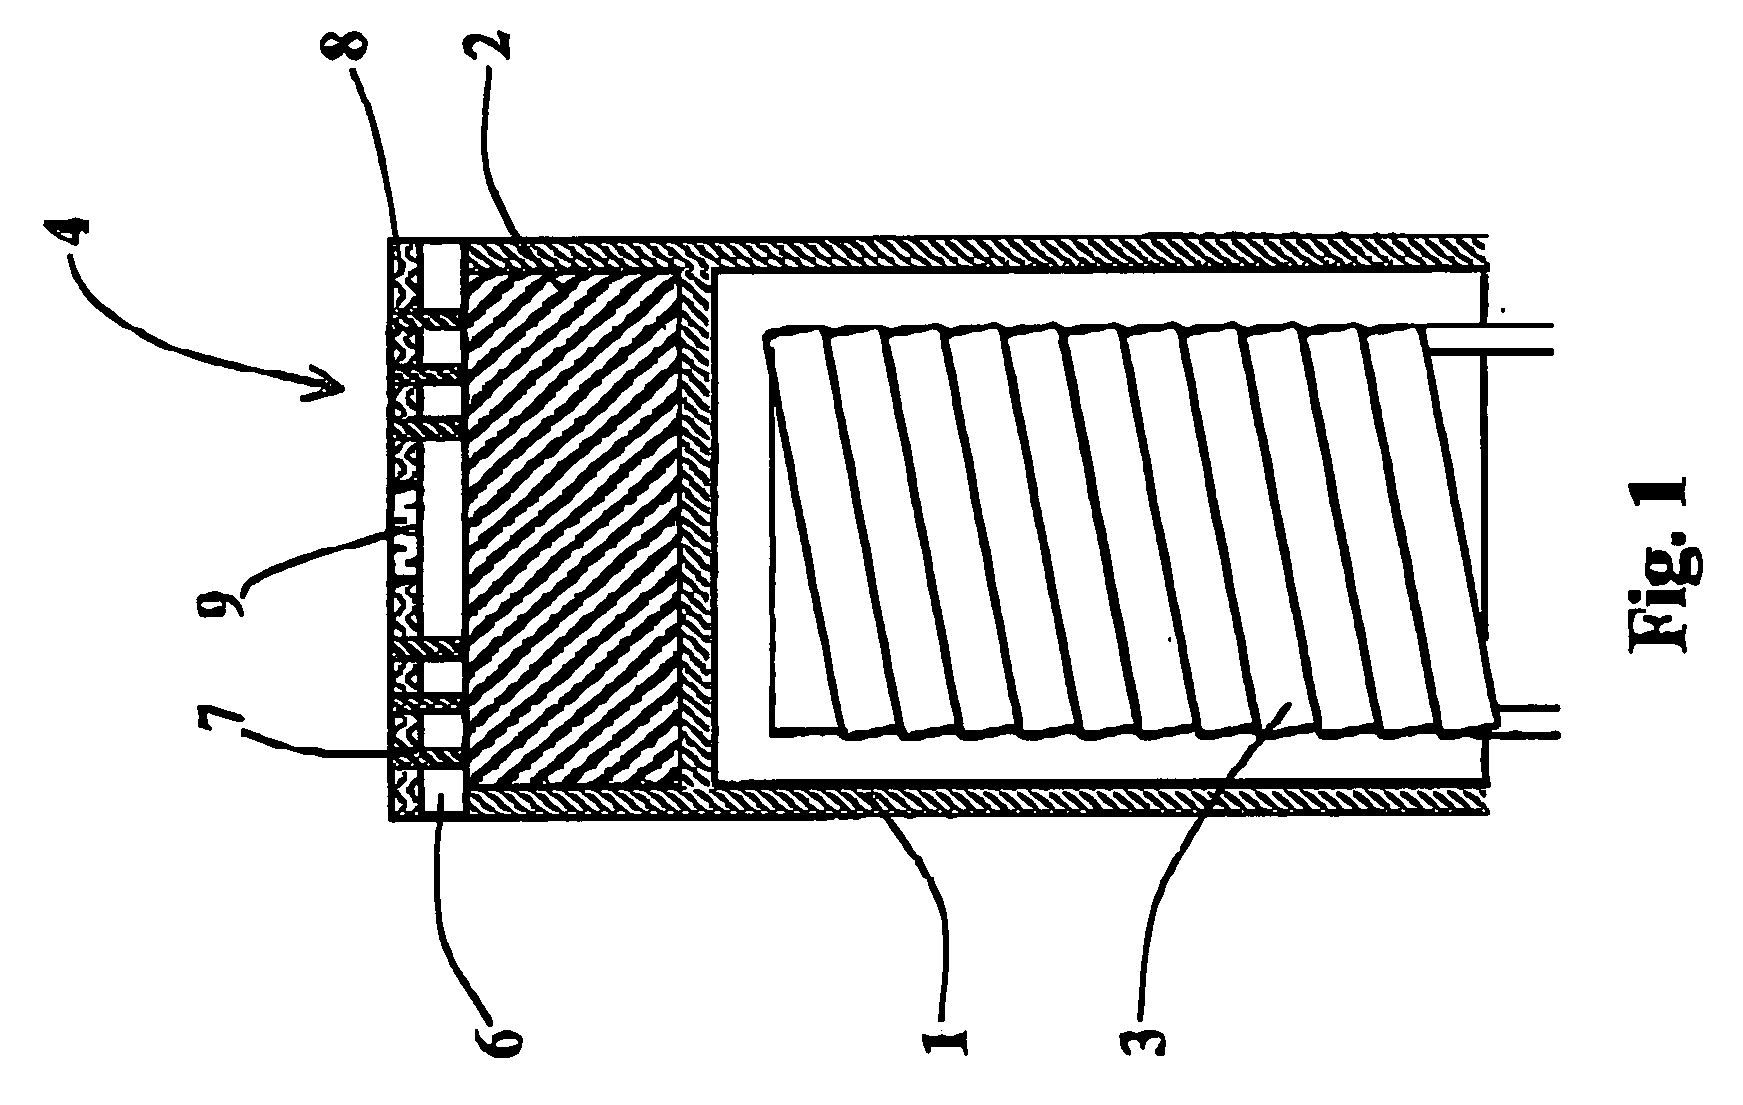 Dispenser cathode